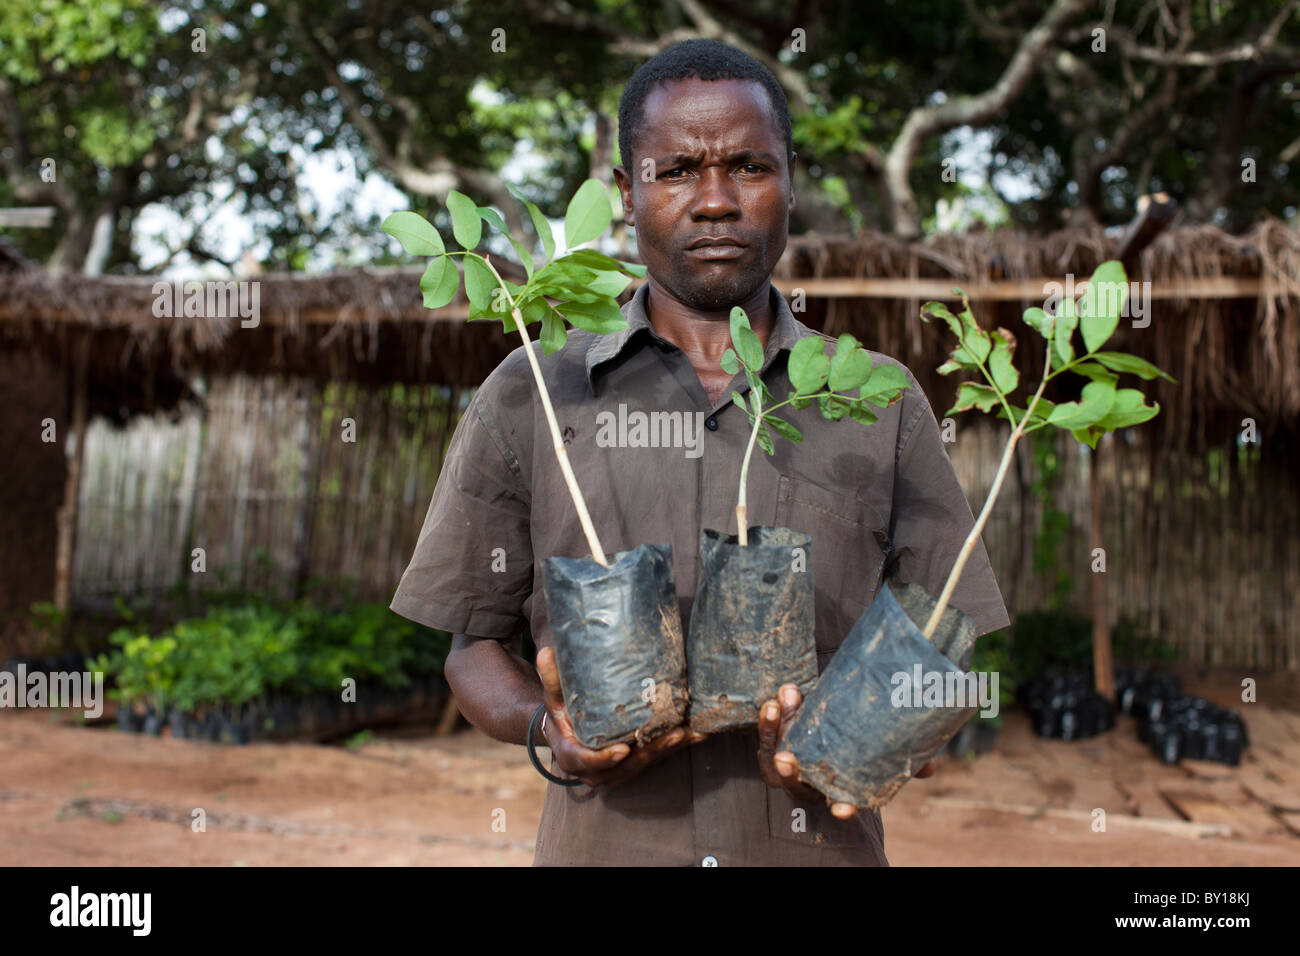 NAMULA, Mozambico, Maggio 2010 : Victor Ramos, 35, chi gestisce un vivaio per un semplice licenziatario detiene Shamfuta tree piantine. Foto Stock